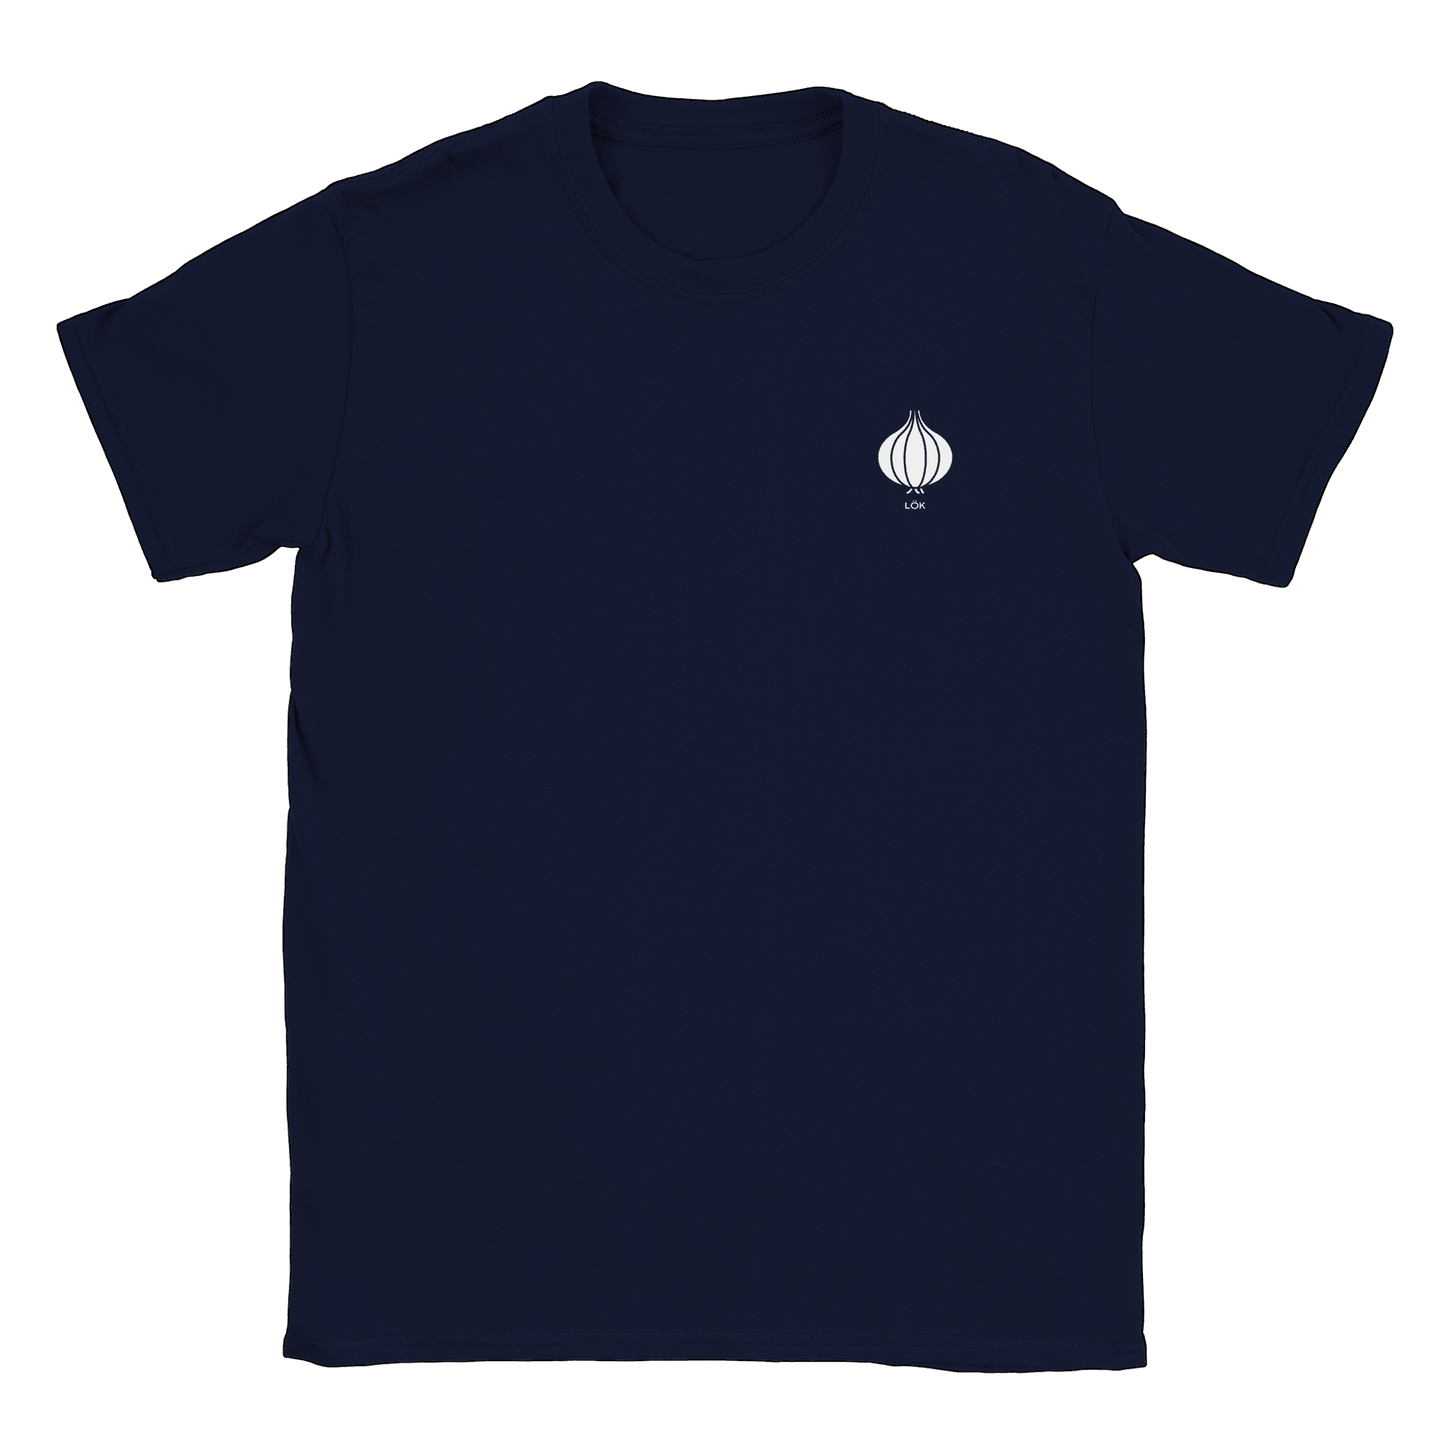 Lök liten - T-shirt Navy